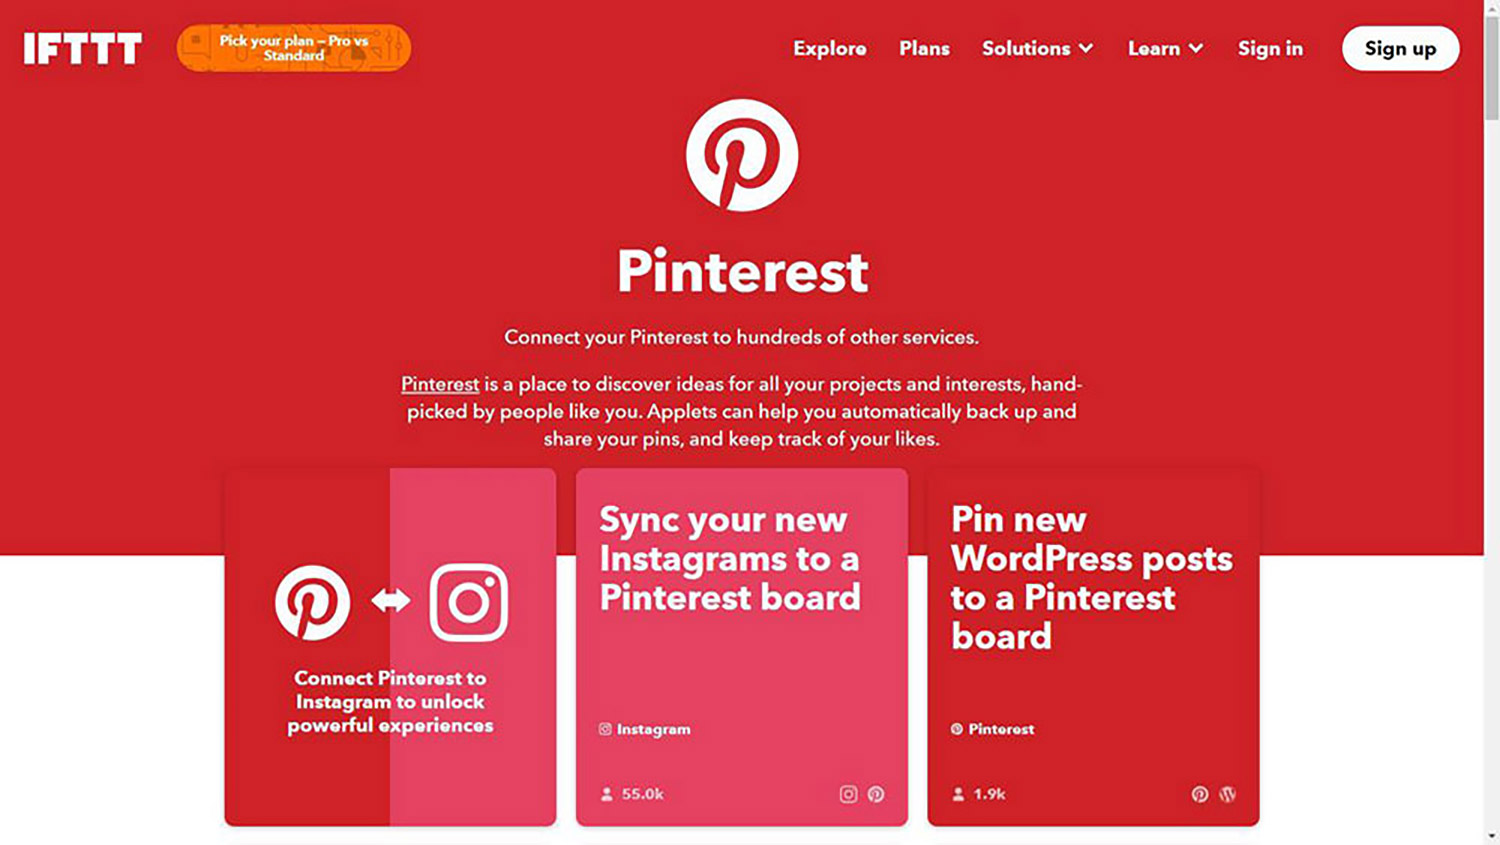 IFTTT for Pinterest